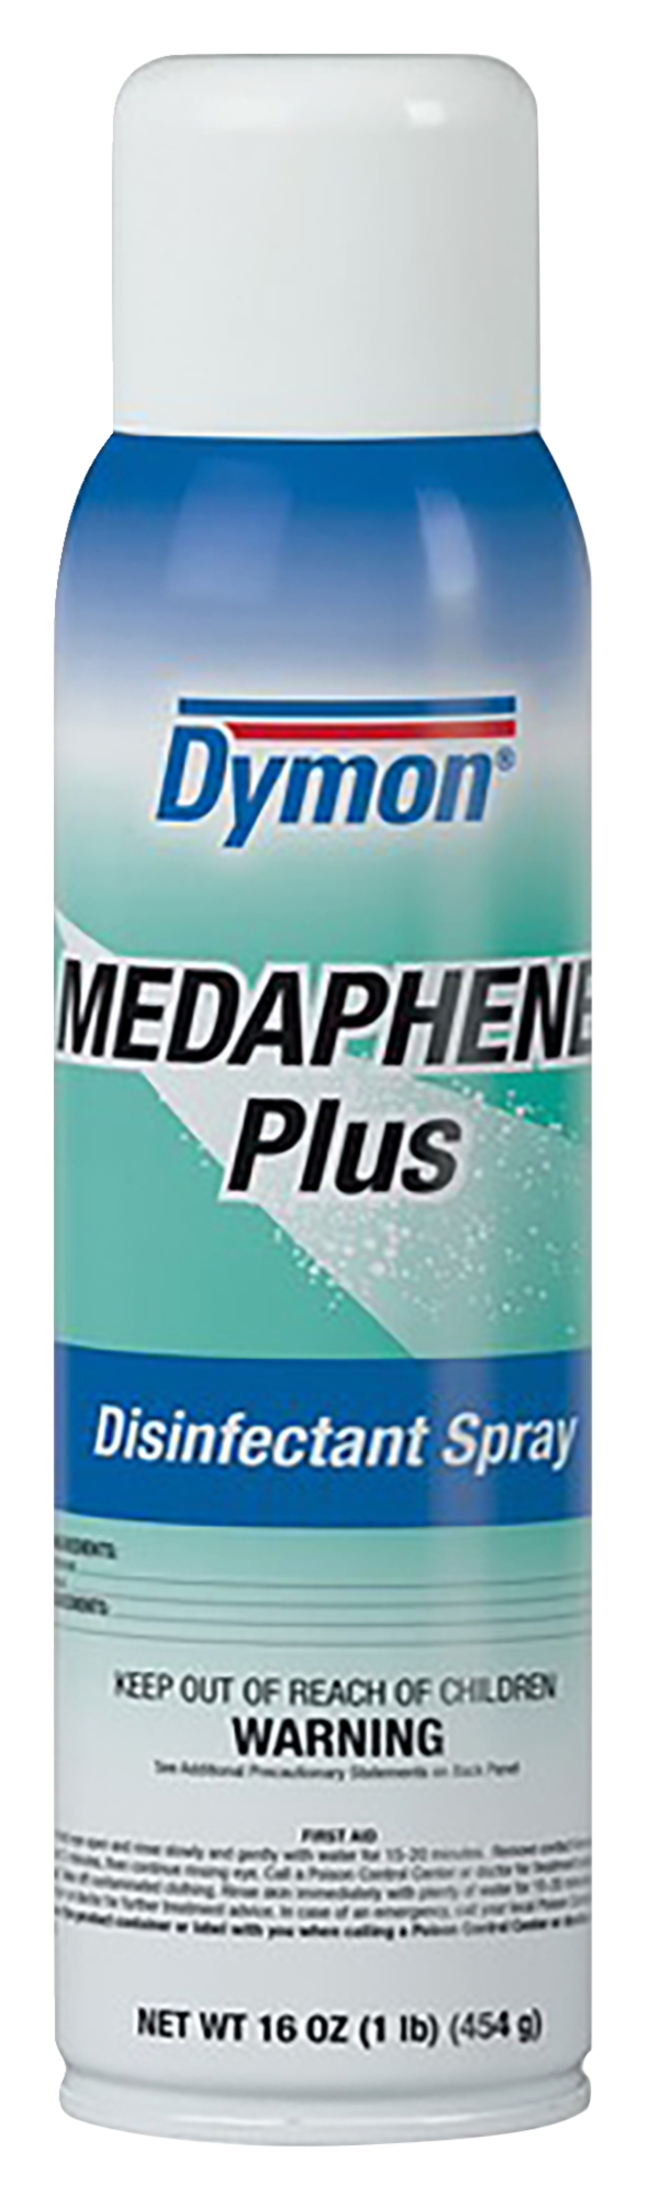 ITW Medaphene Plus Disinfectant Spray Aerosol, Item Number 2050407